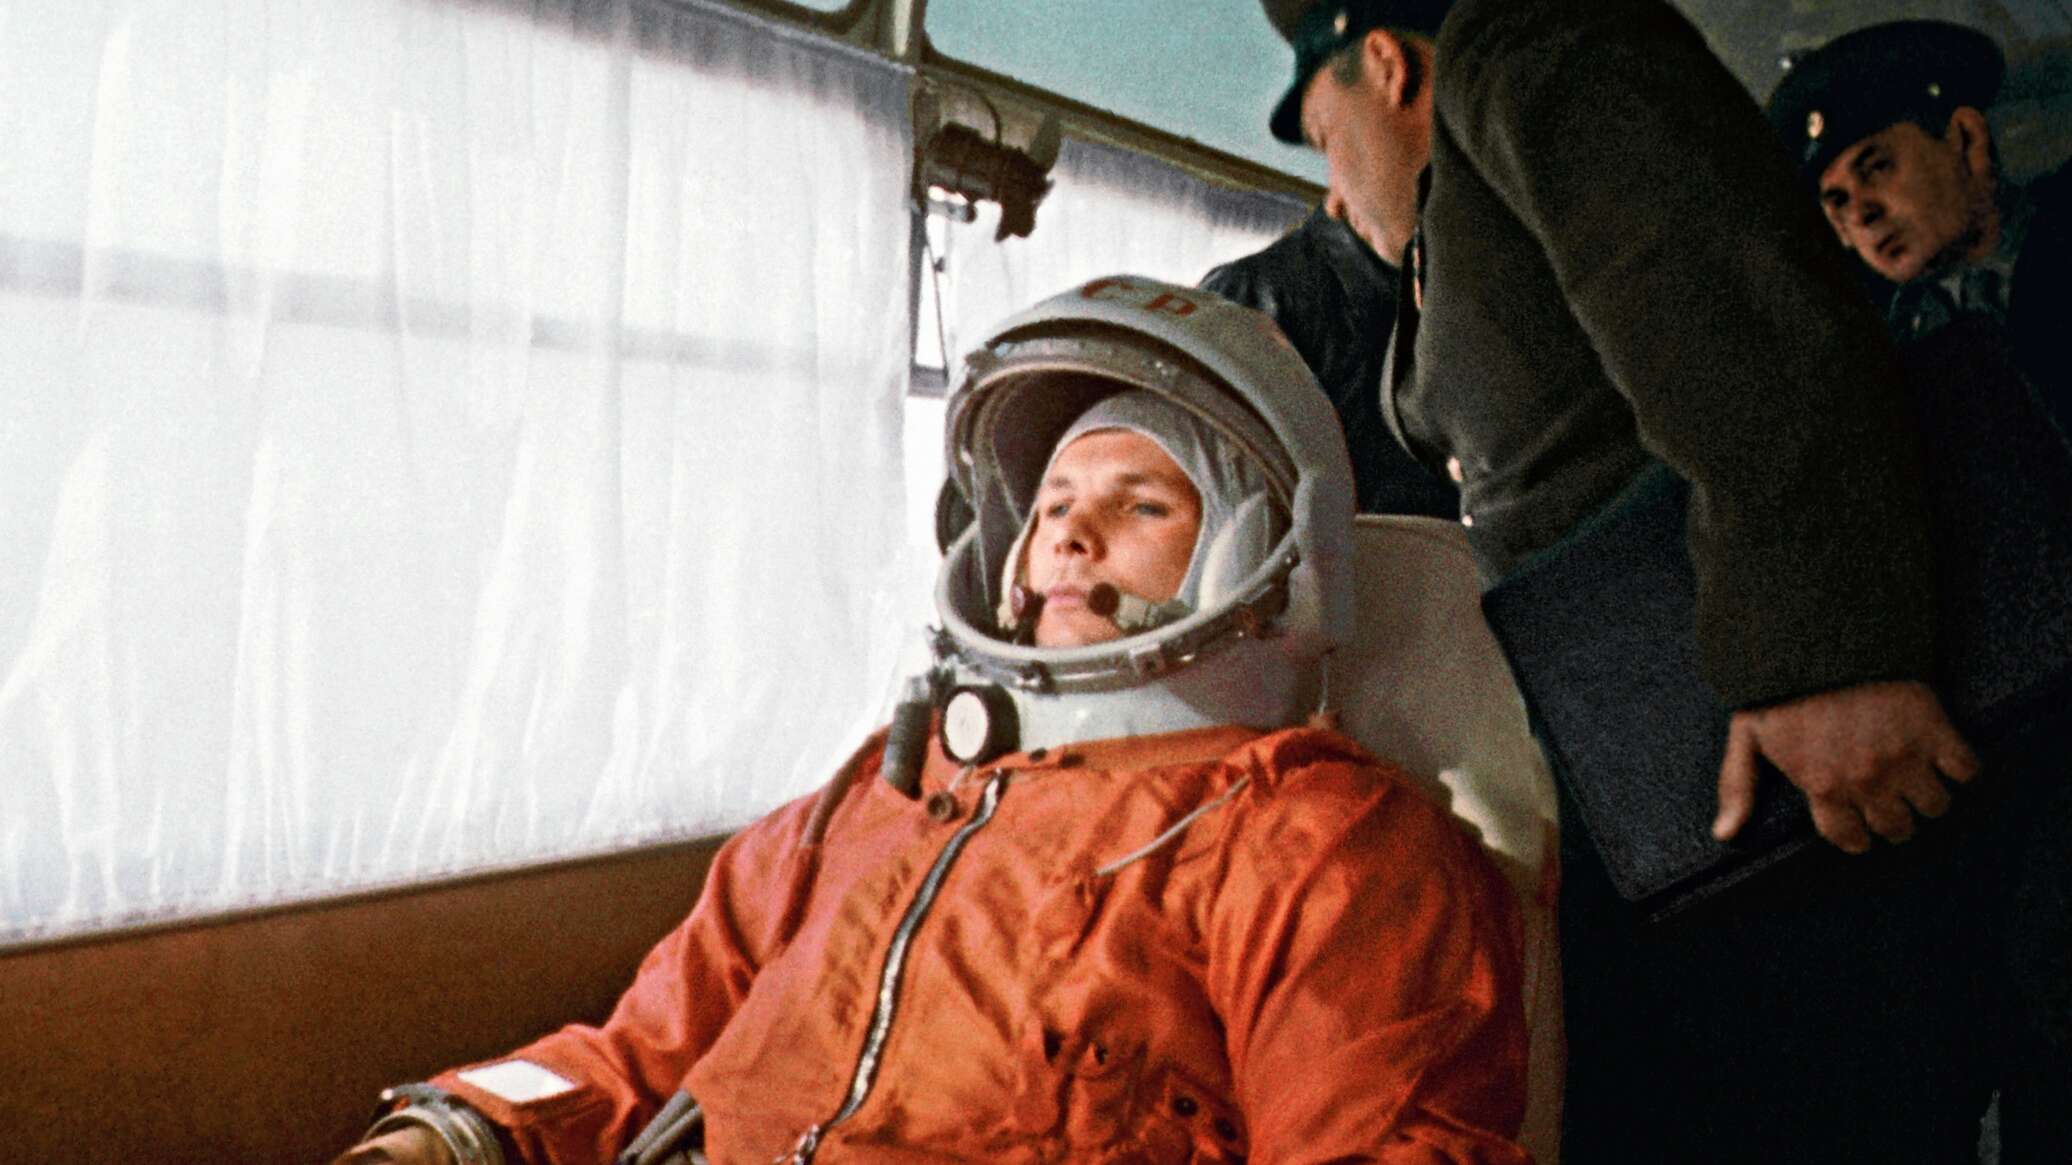 Полет первого в мире космонавта юрия